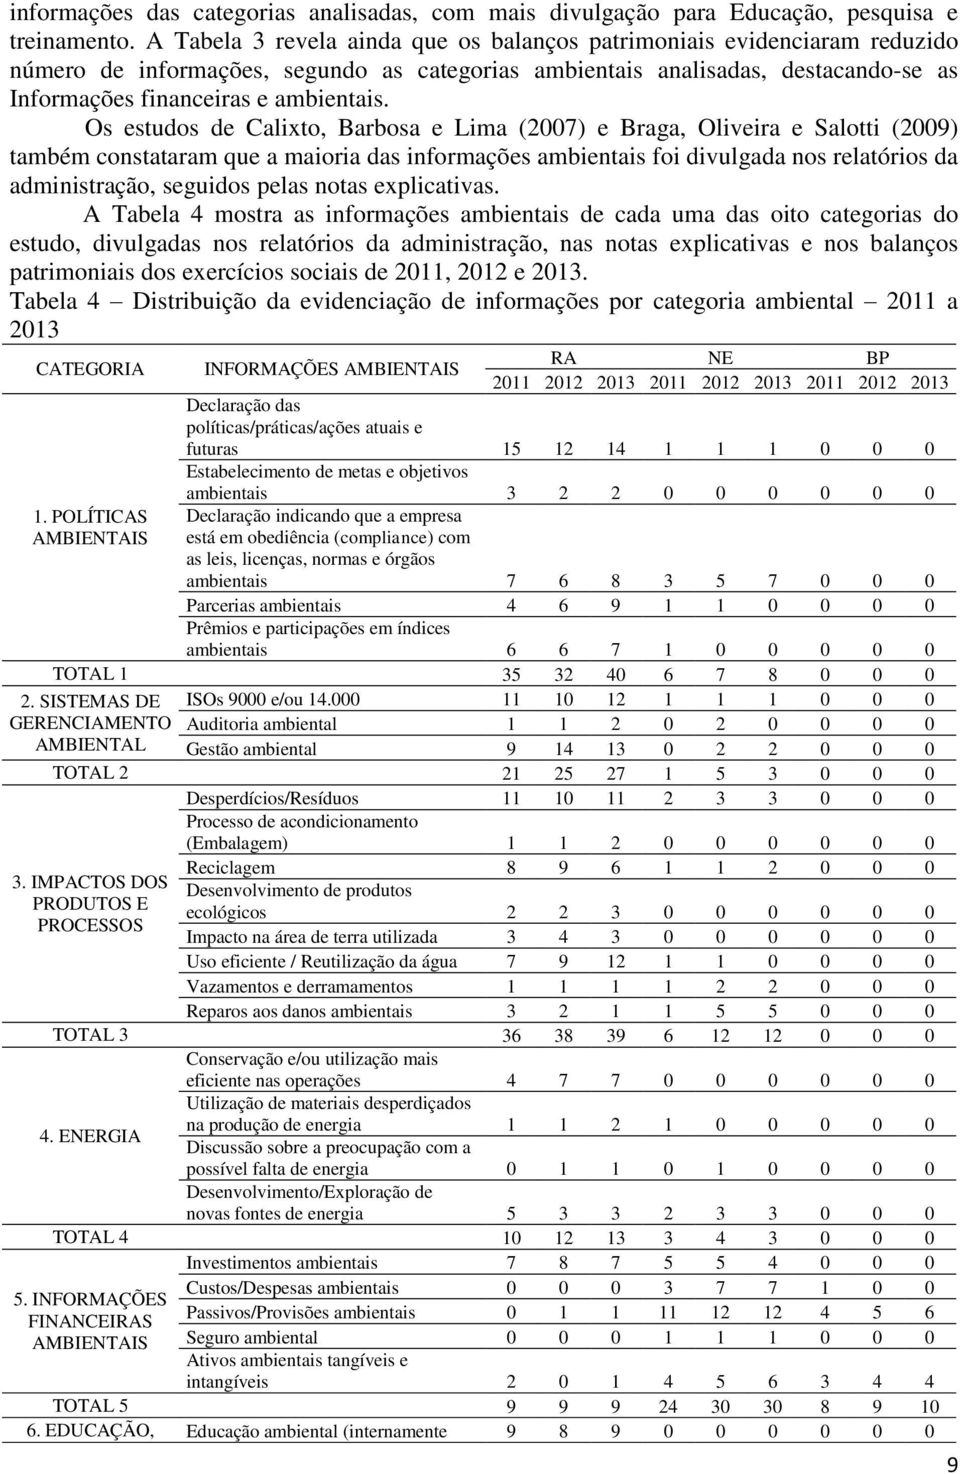 Os estudos de Calixto, Barbosa e Lima (2007) e Braga, Oliveira e Salotti (2009) também constataram que a maioria das informações ambientais foi divulgada nos relatórios da administração, seguidos